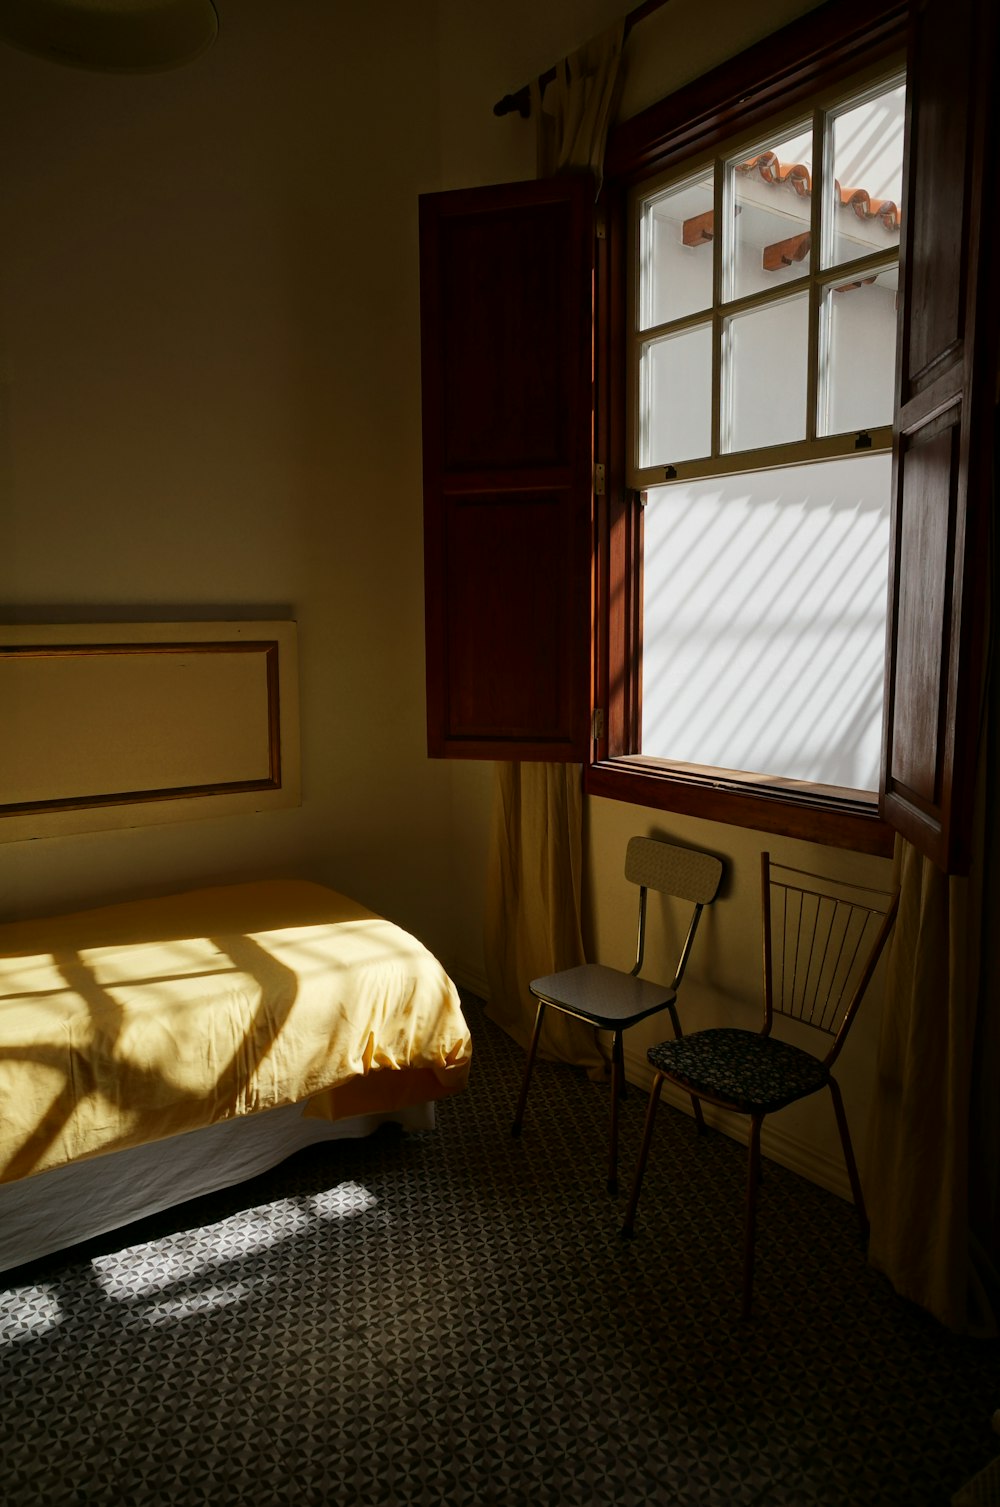 white bed linen near window